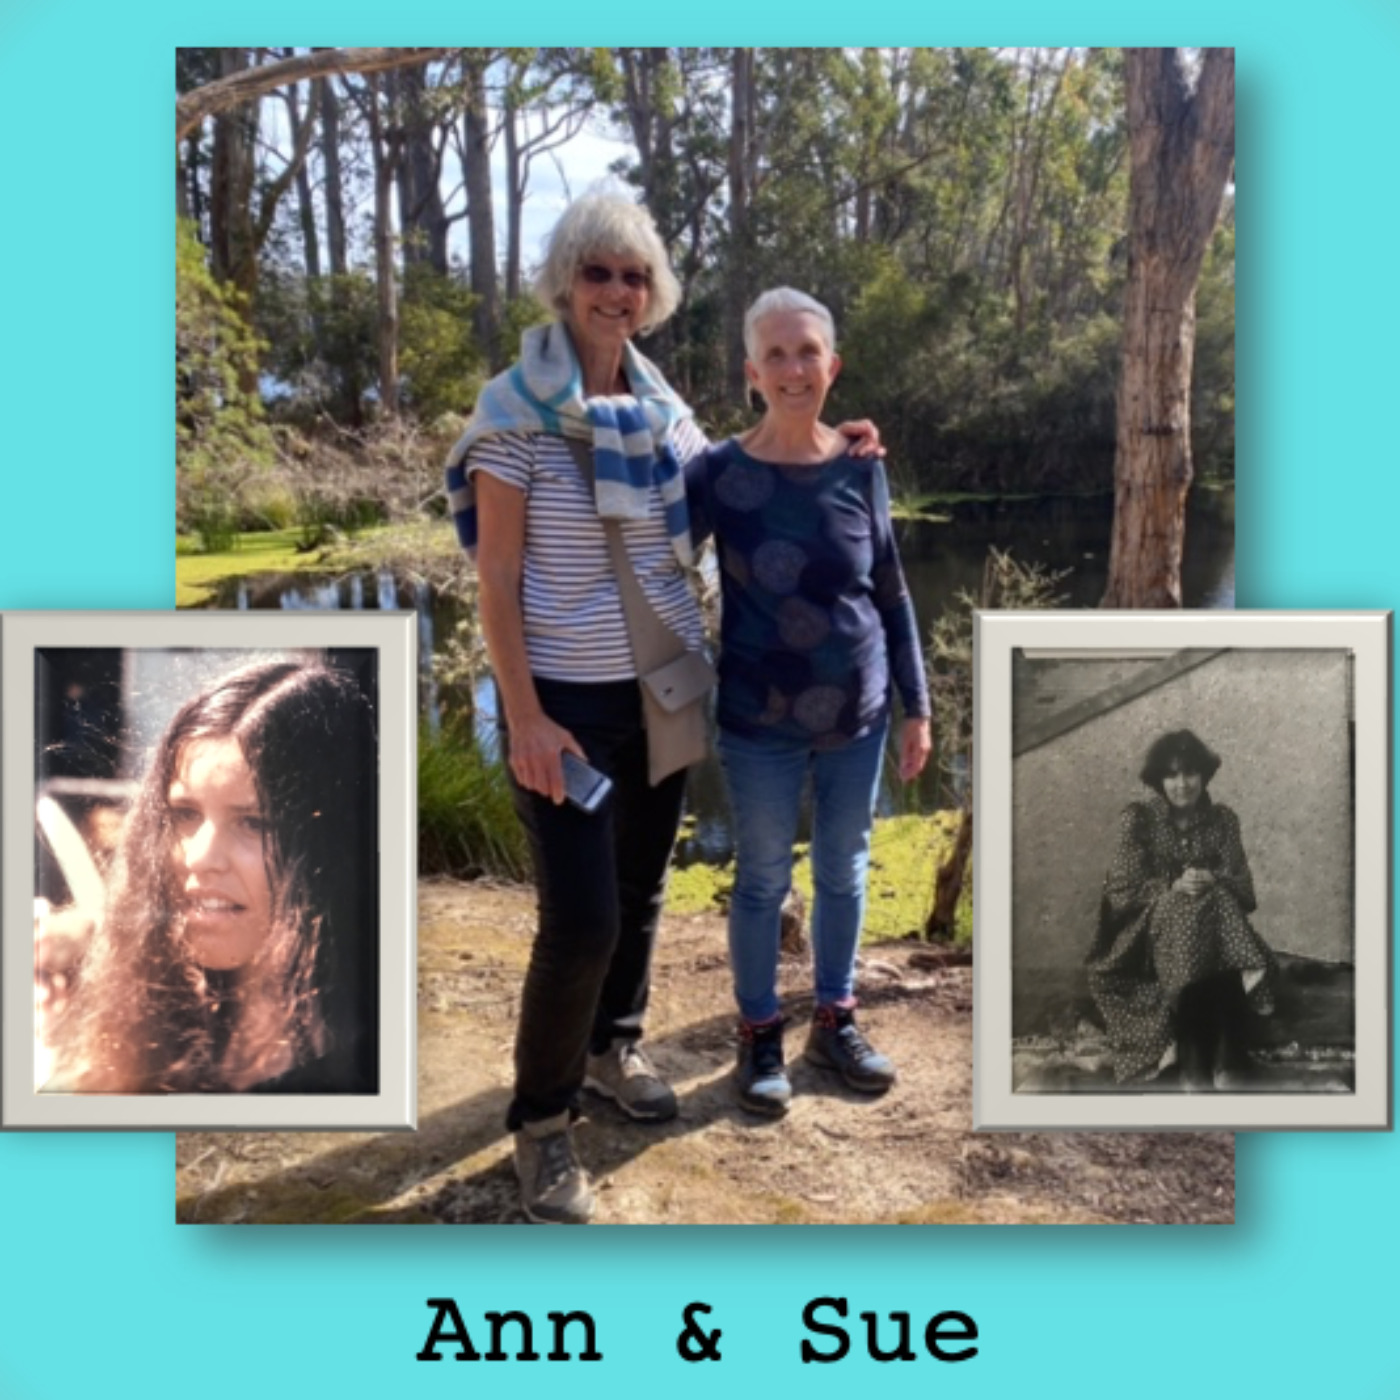 3. Ann and Sue